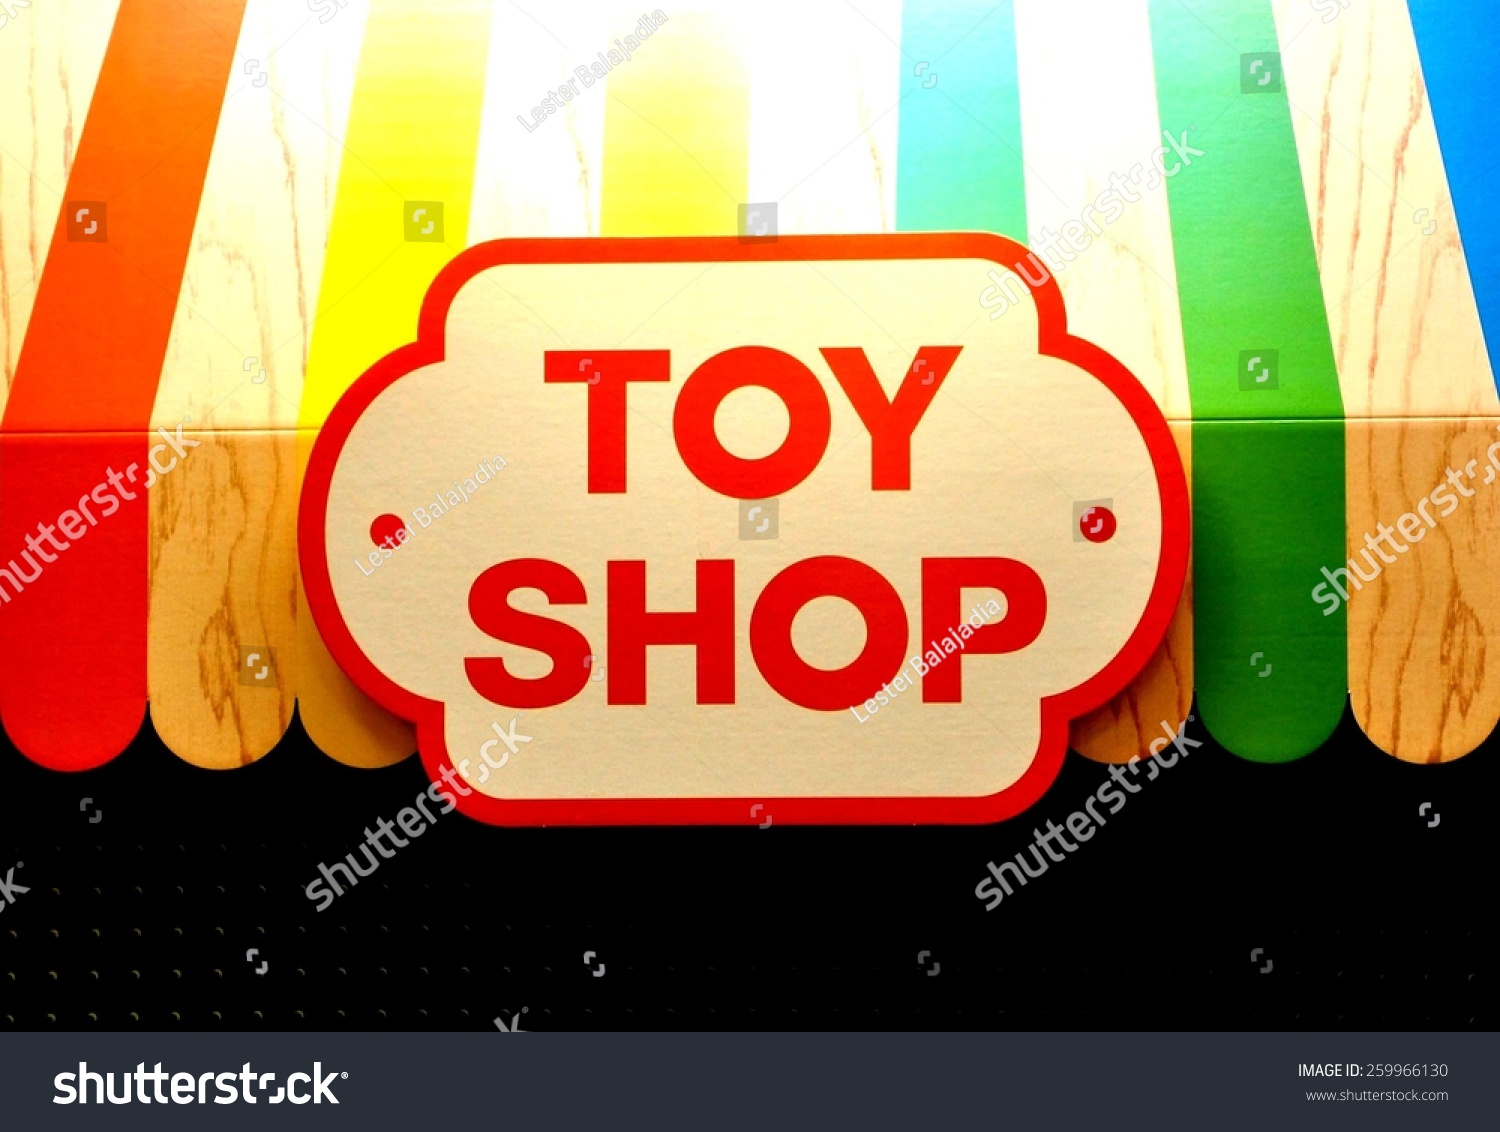 toy shop clipart - photo #34